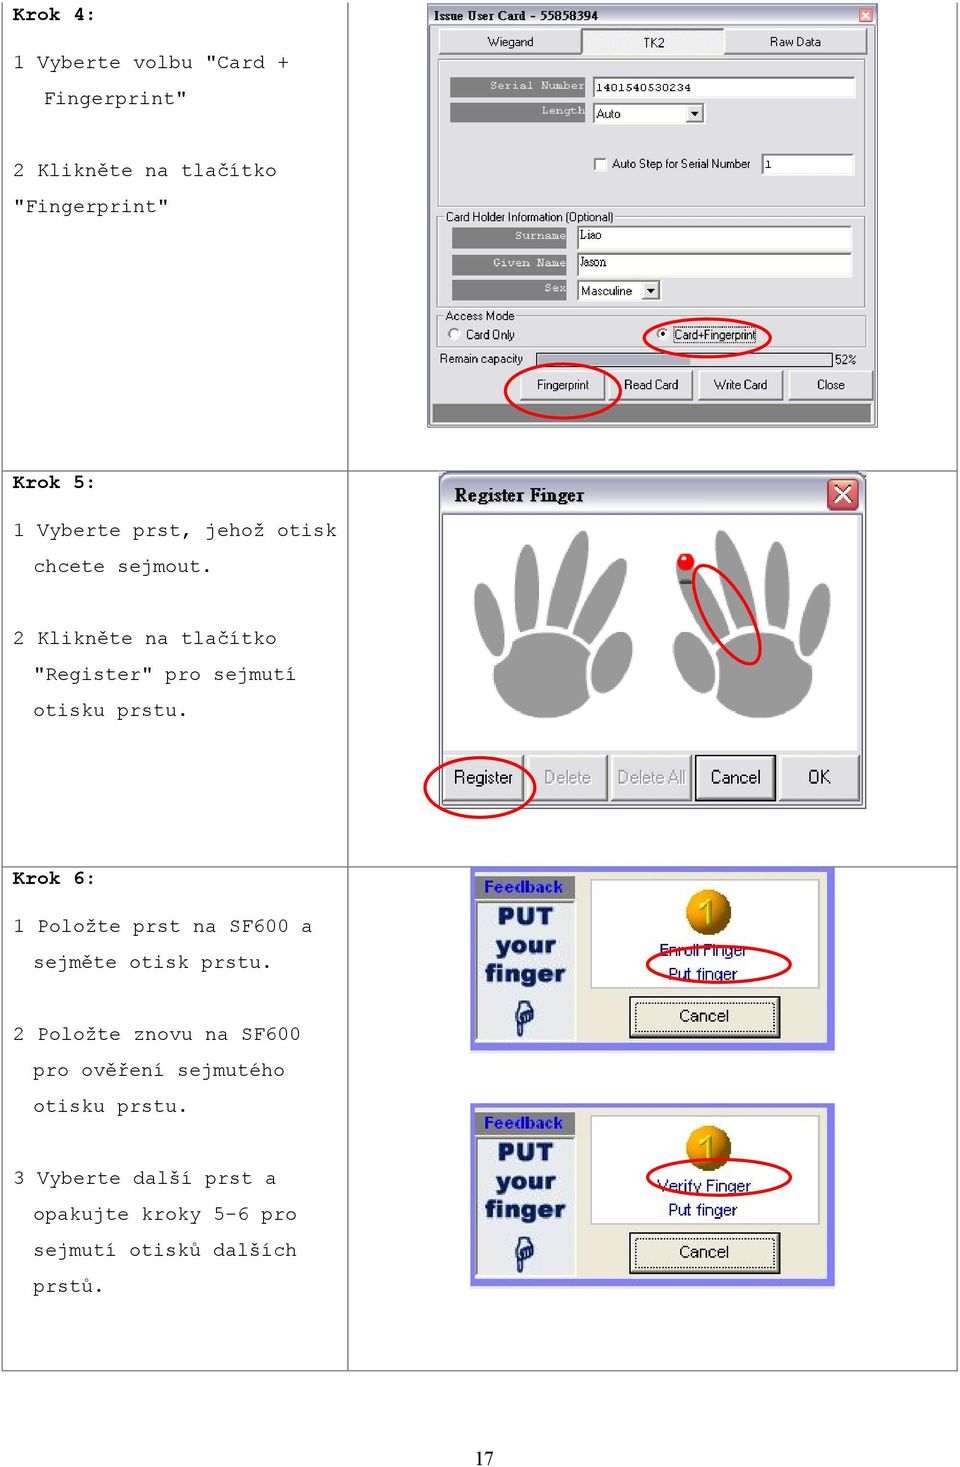 2 Klikněte na tlačítko "Register" pro sejmutí otisku prstu.